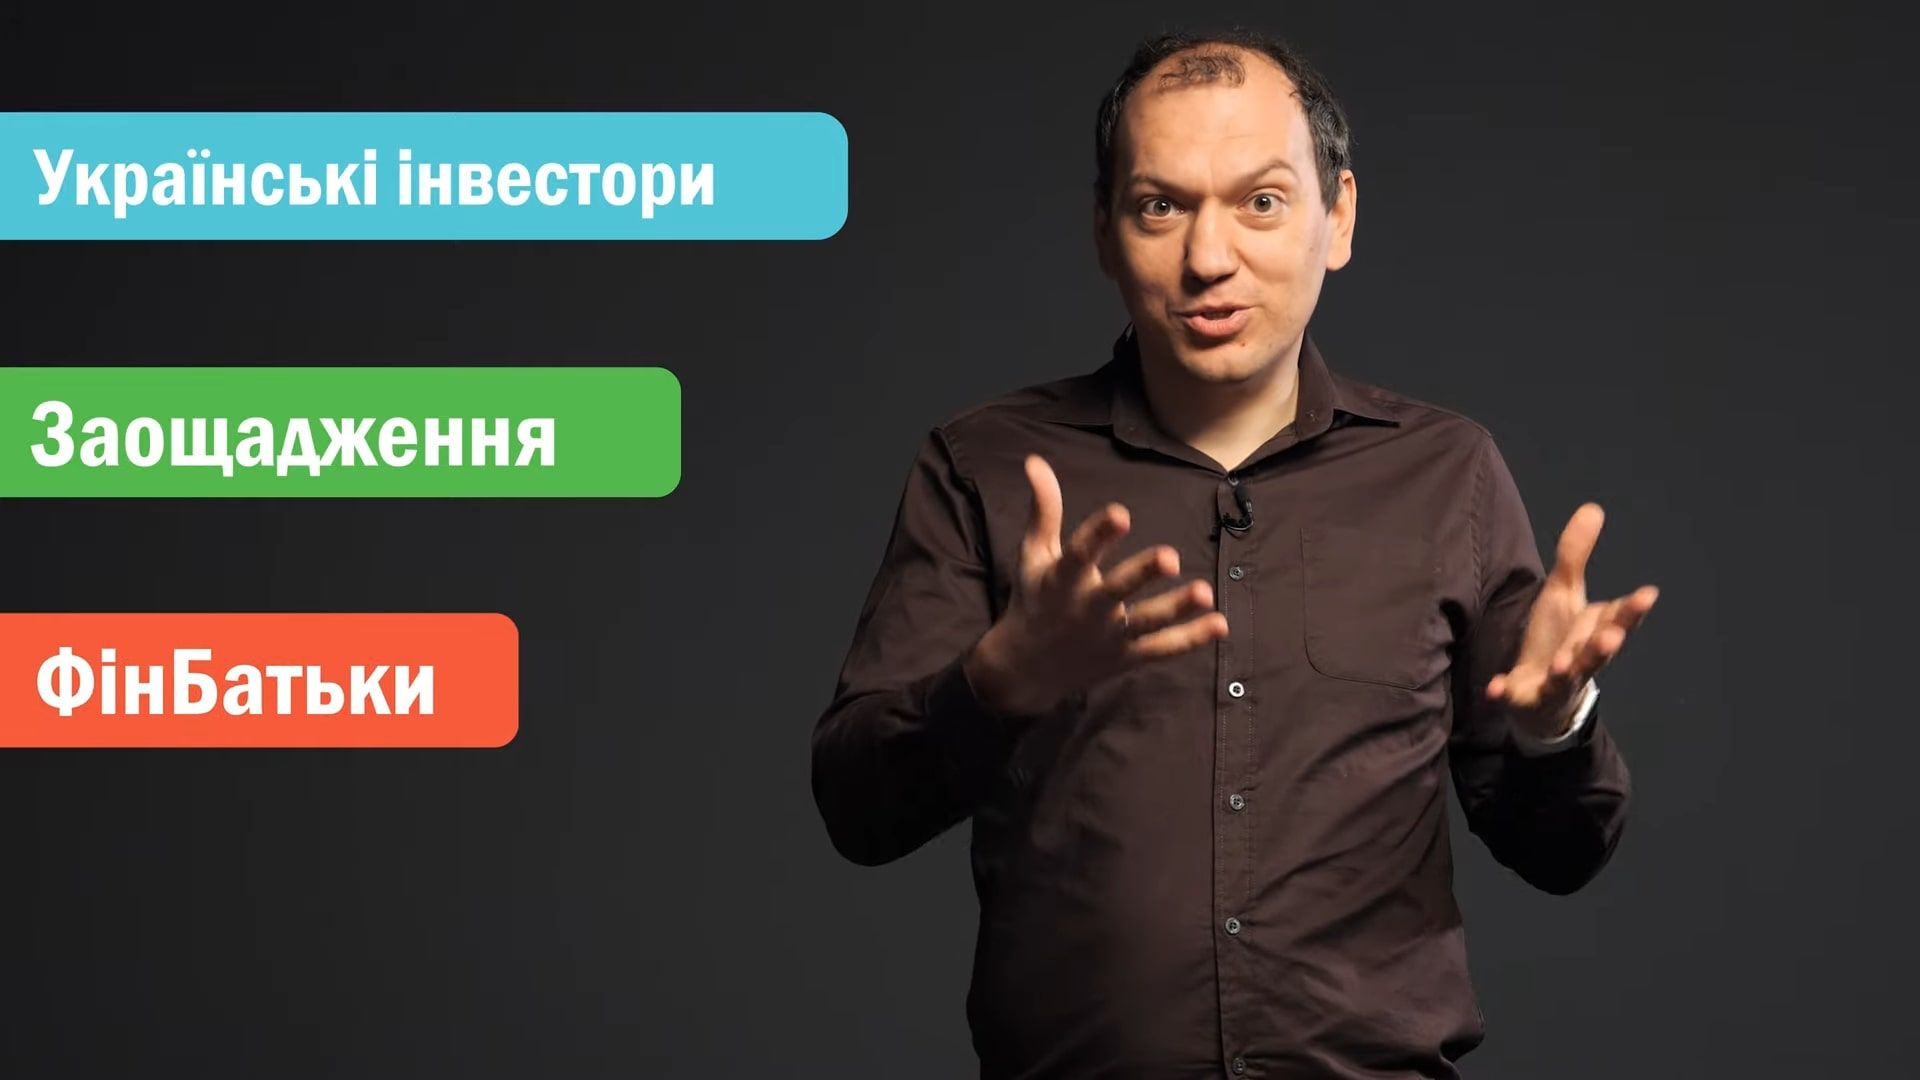 Скриншот з українського блогу про фінанси